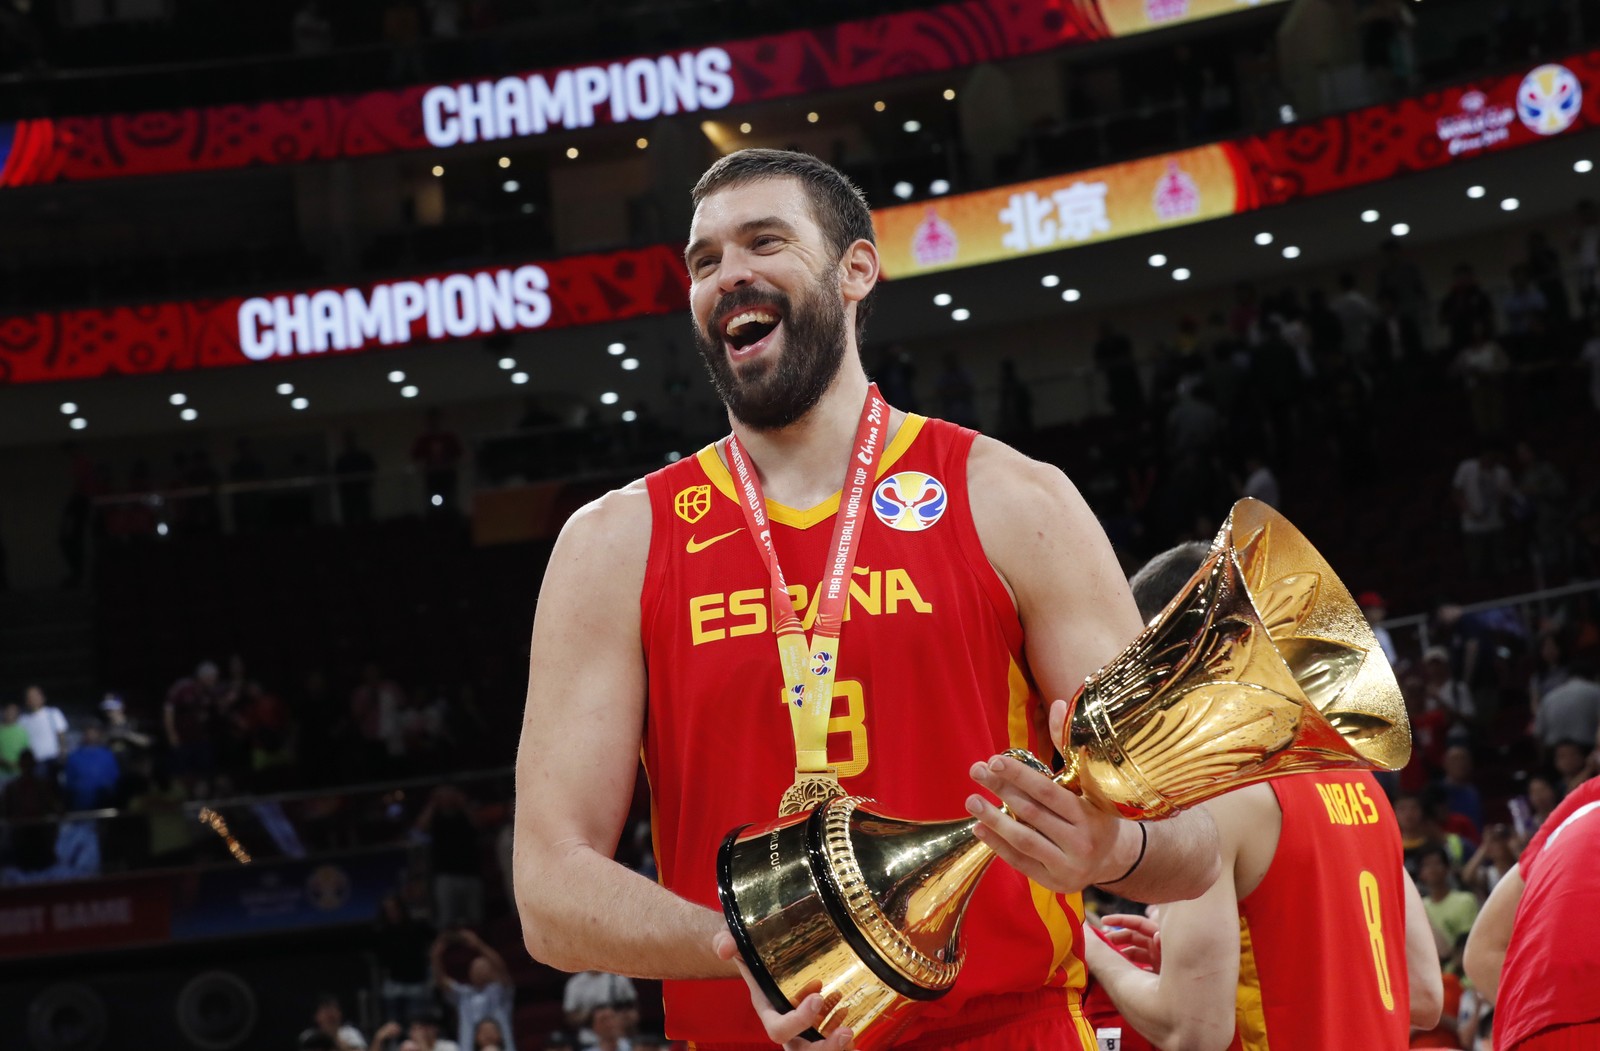 Espanha passa EUA e vira líder do ranking mundial de basquete, basquete